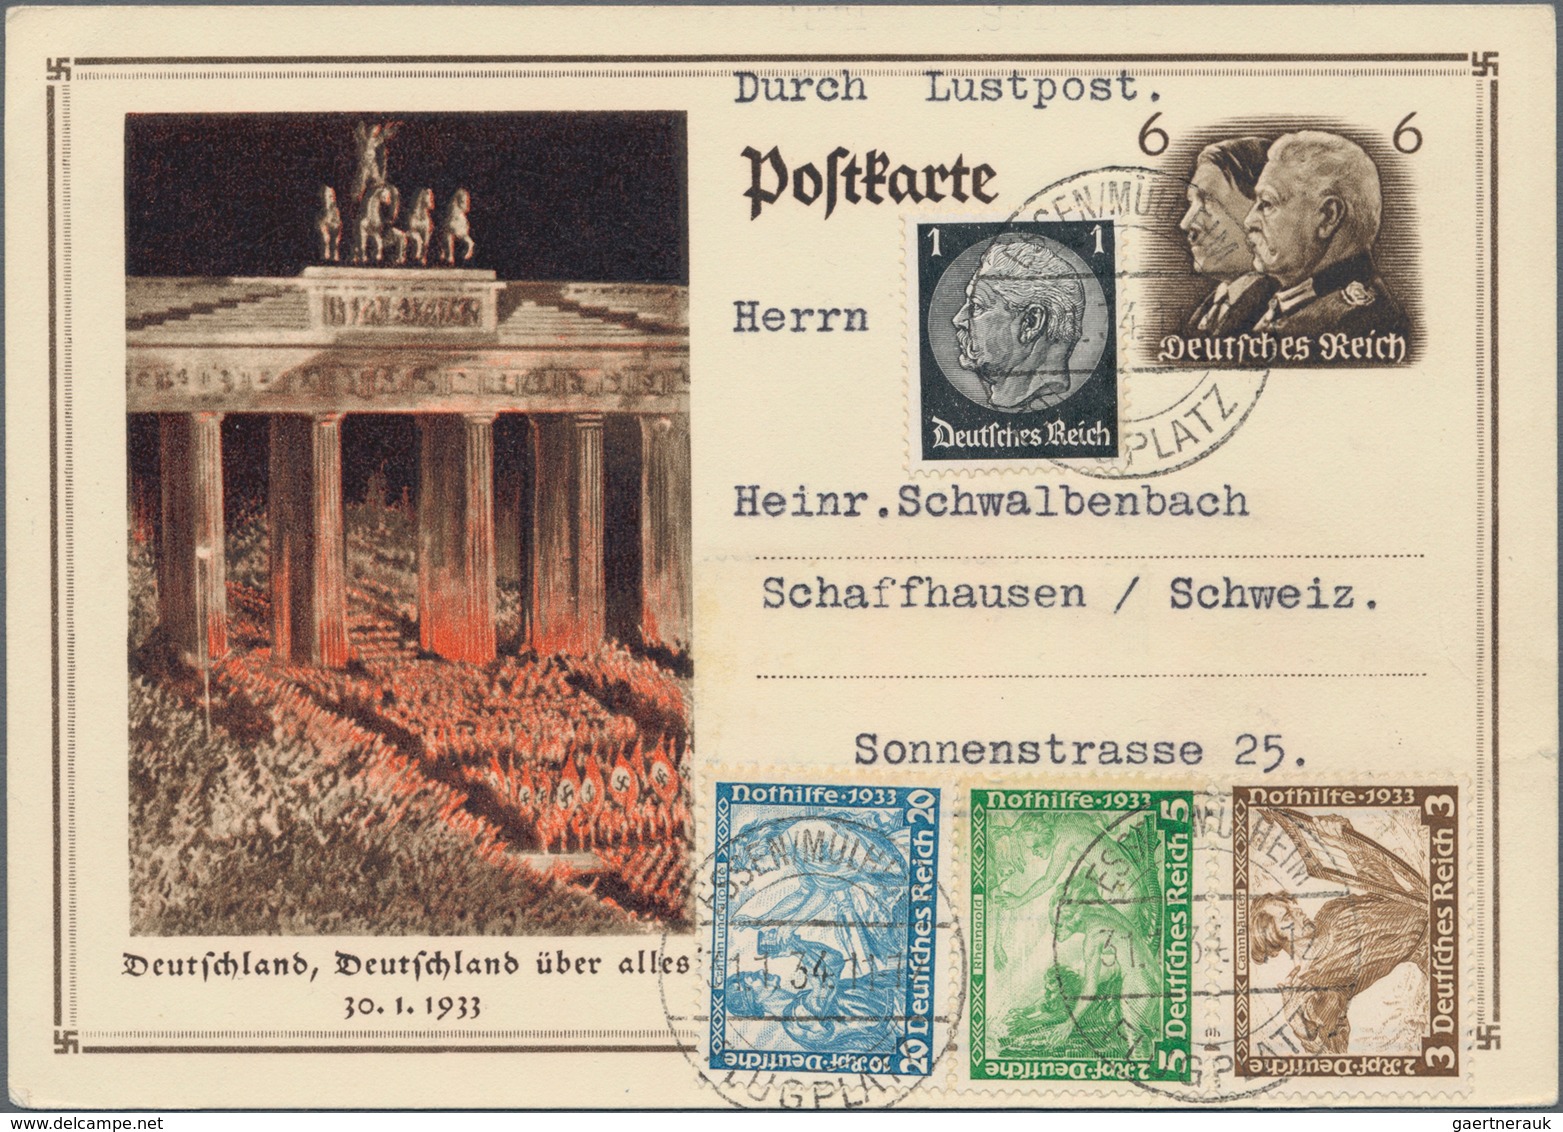 Deutsches Reich - 3. Reich: 1933, Nothilfe Wagner, komplette Serie, teils in Zusammendrucken auf 5 P